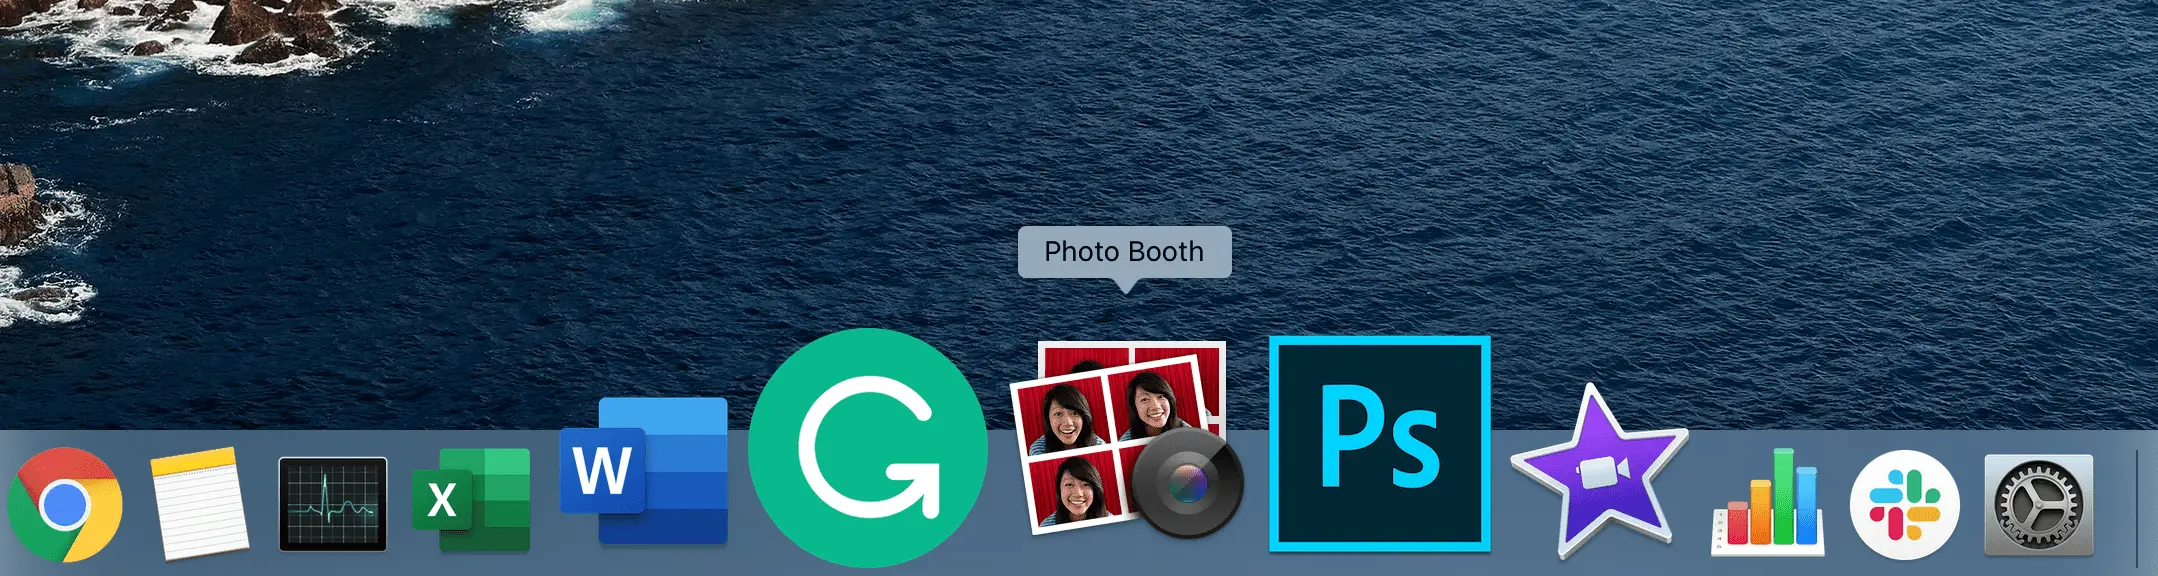 Mac Dock mostrando o aplicativo Photo Booth